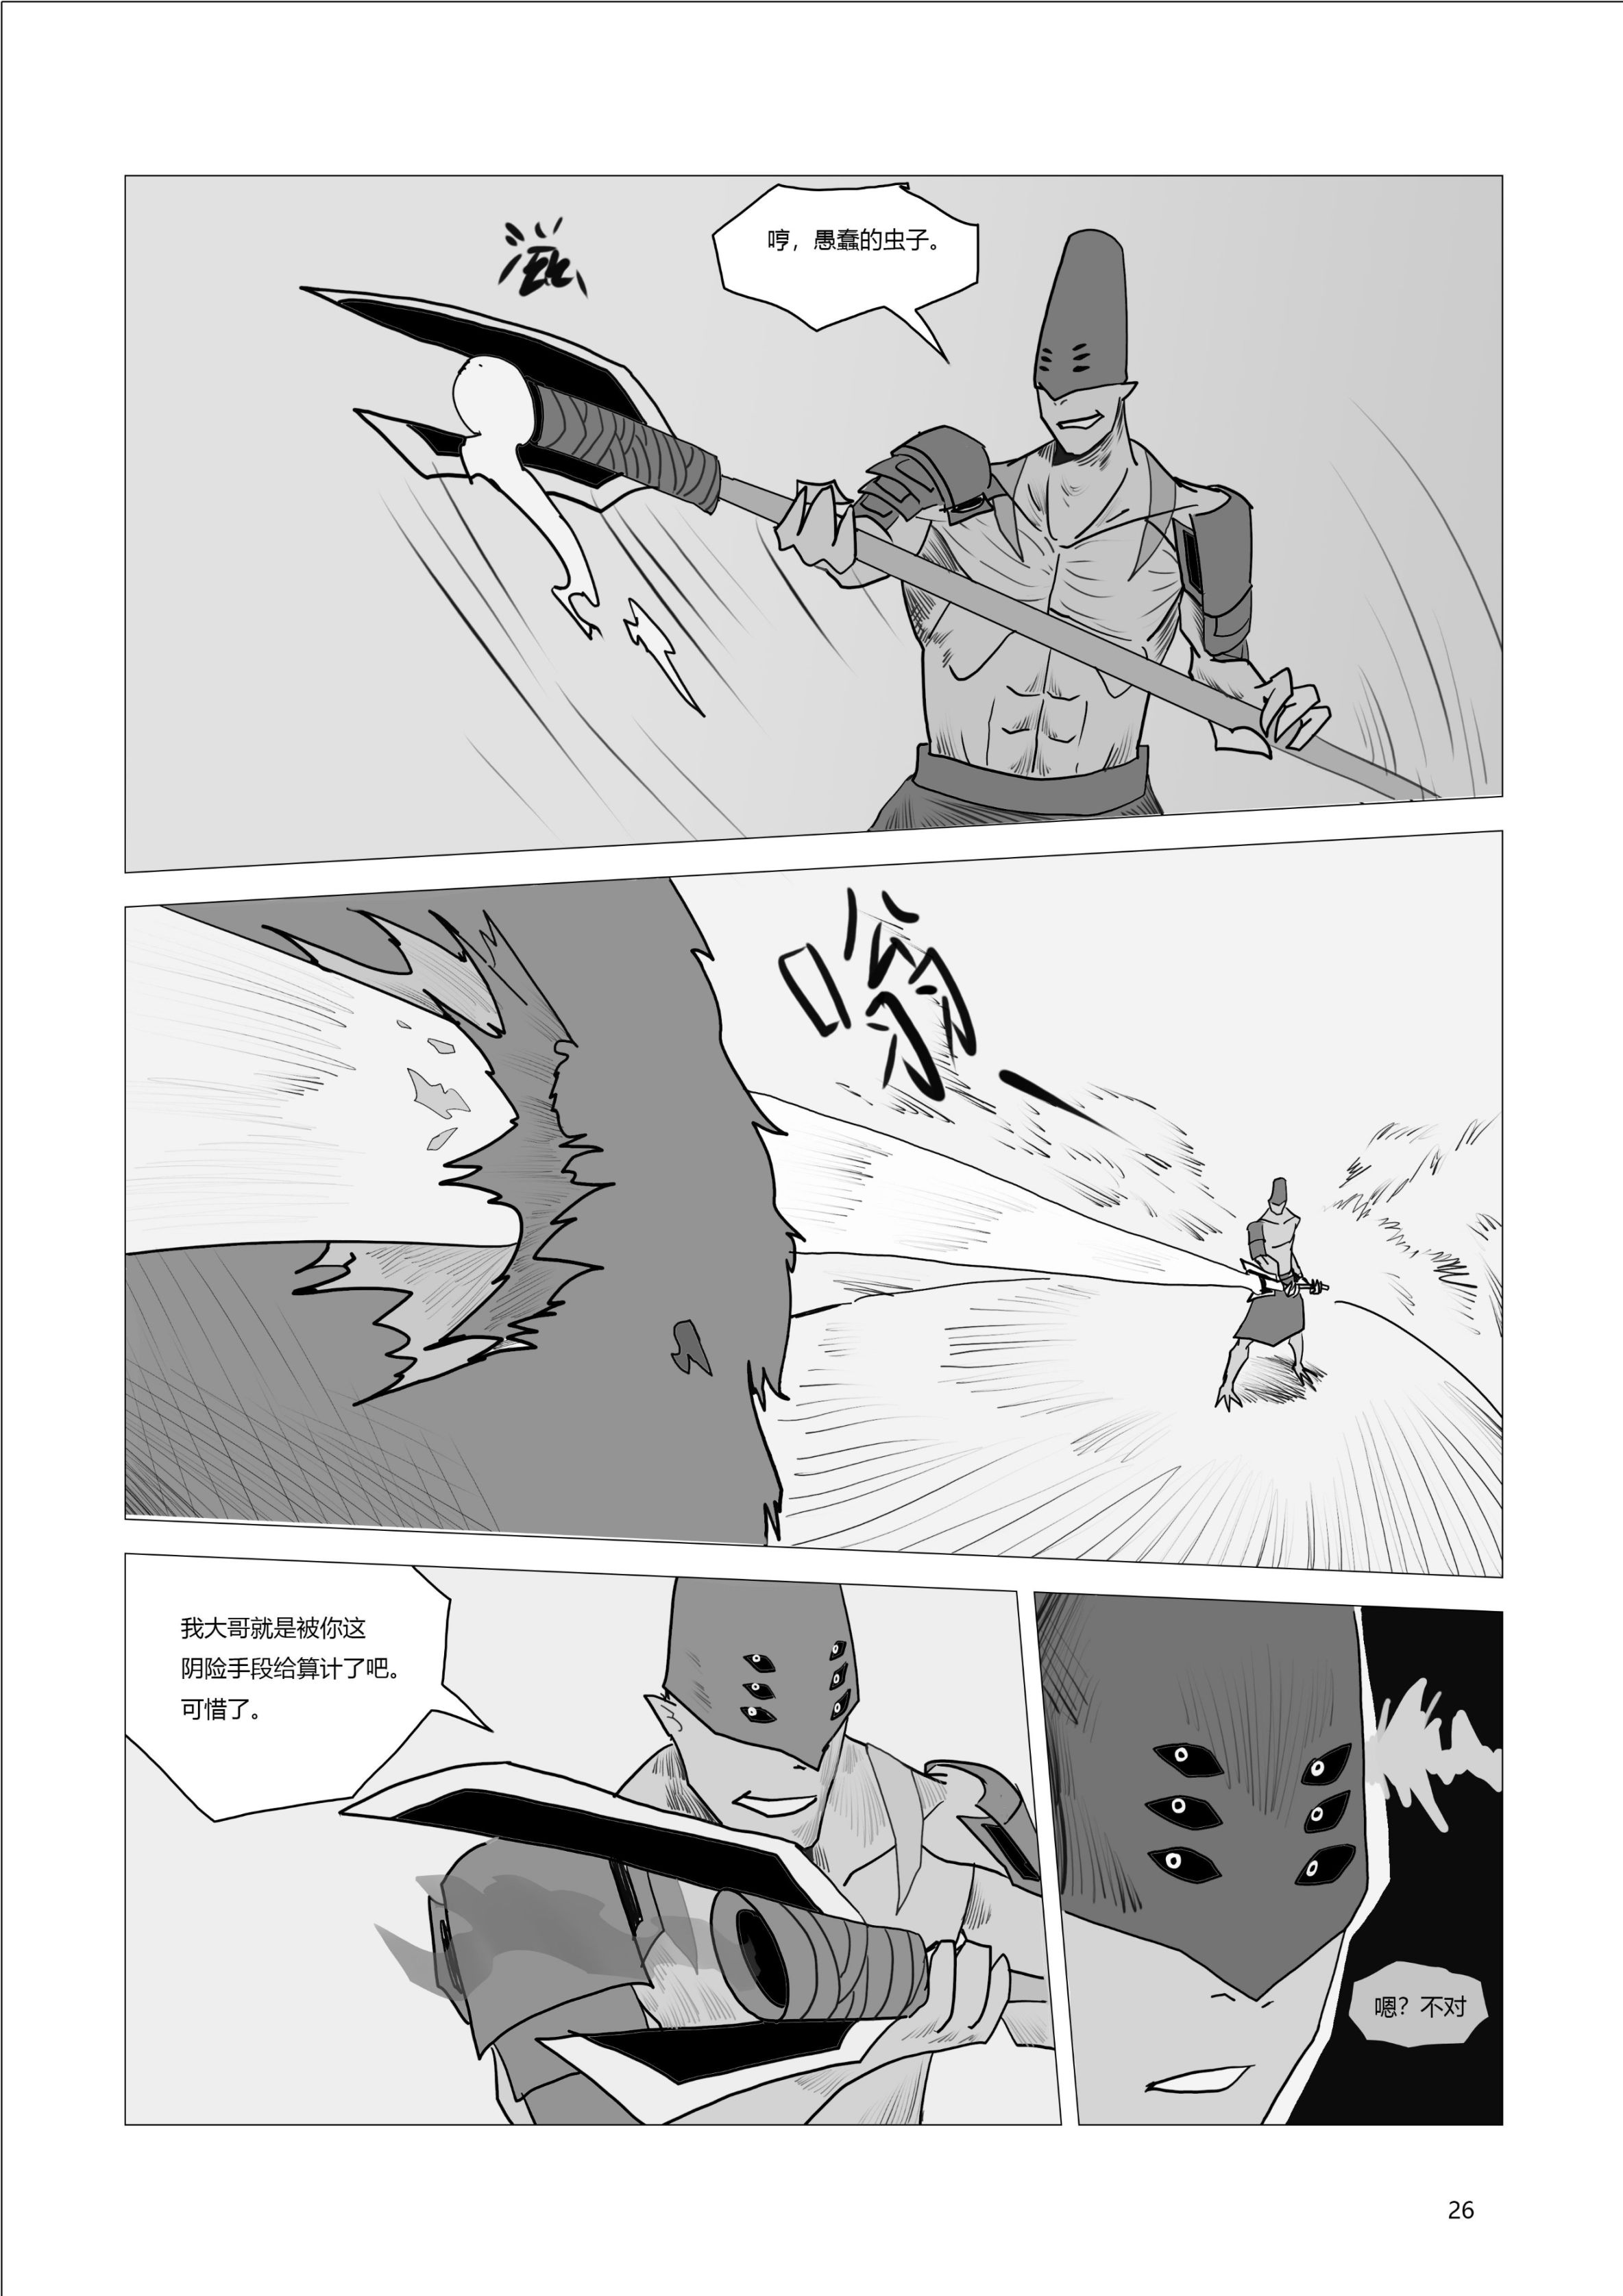 【命运2】原创同人漫画《碎裂炎阳胡克》第四-五话双更-第7张